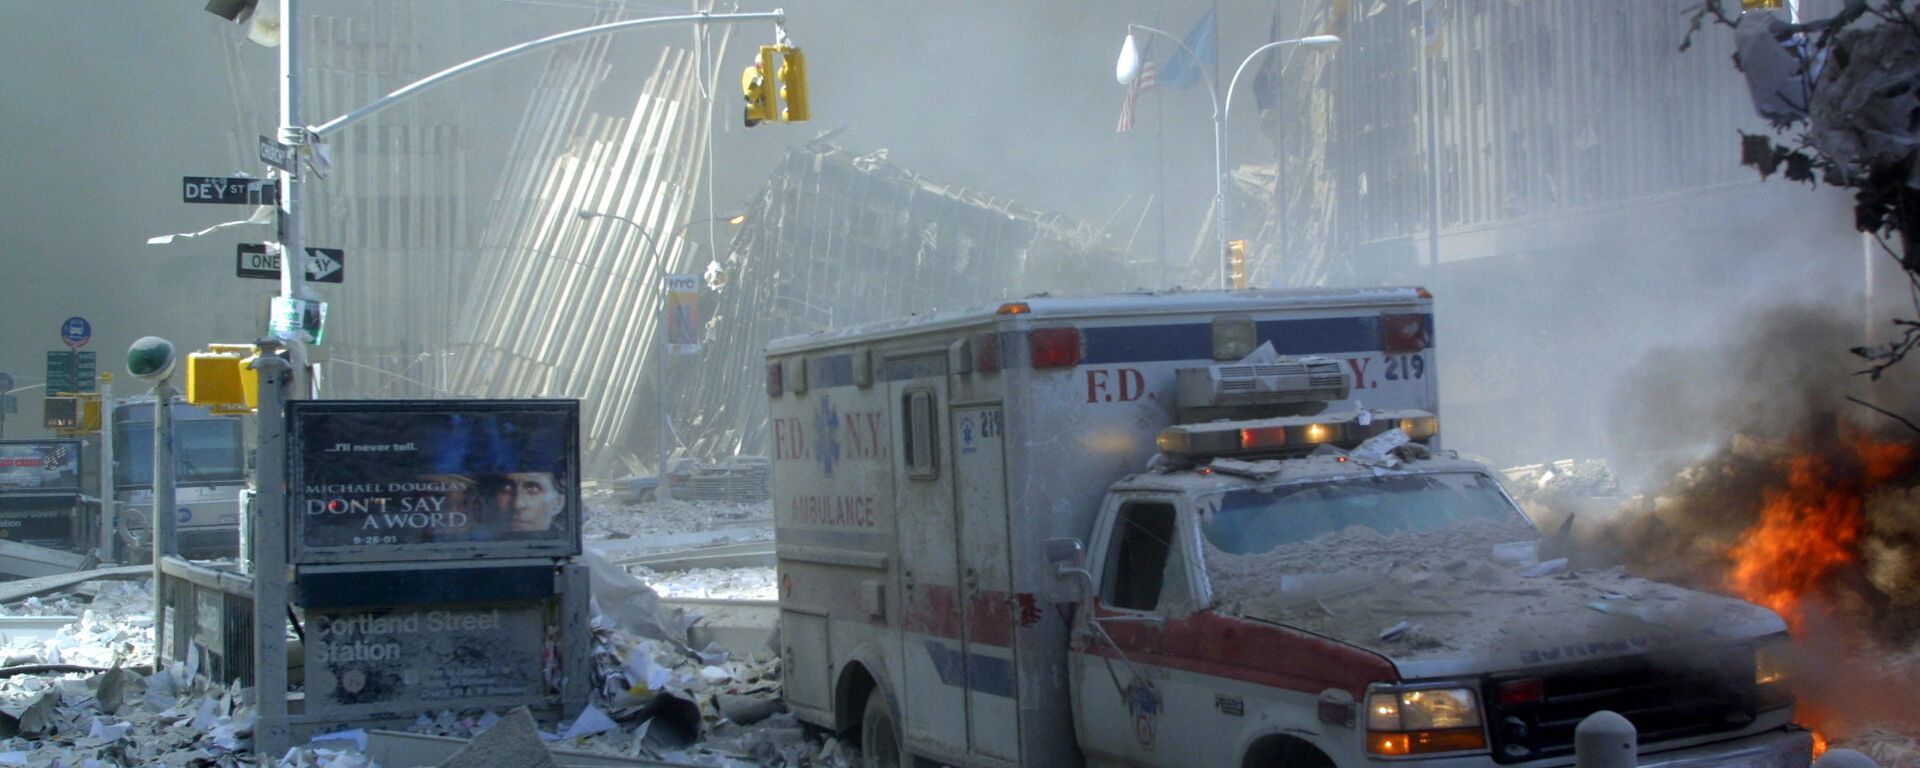 Поврежденный автомобиль скорой помощи и покрытая обломками улица после обрушения первого здания Всемирного торгового центра в Нью-Йорке - Sputnik International, 1920, 11.09.2021